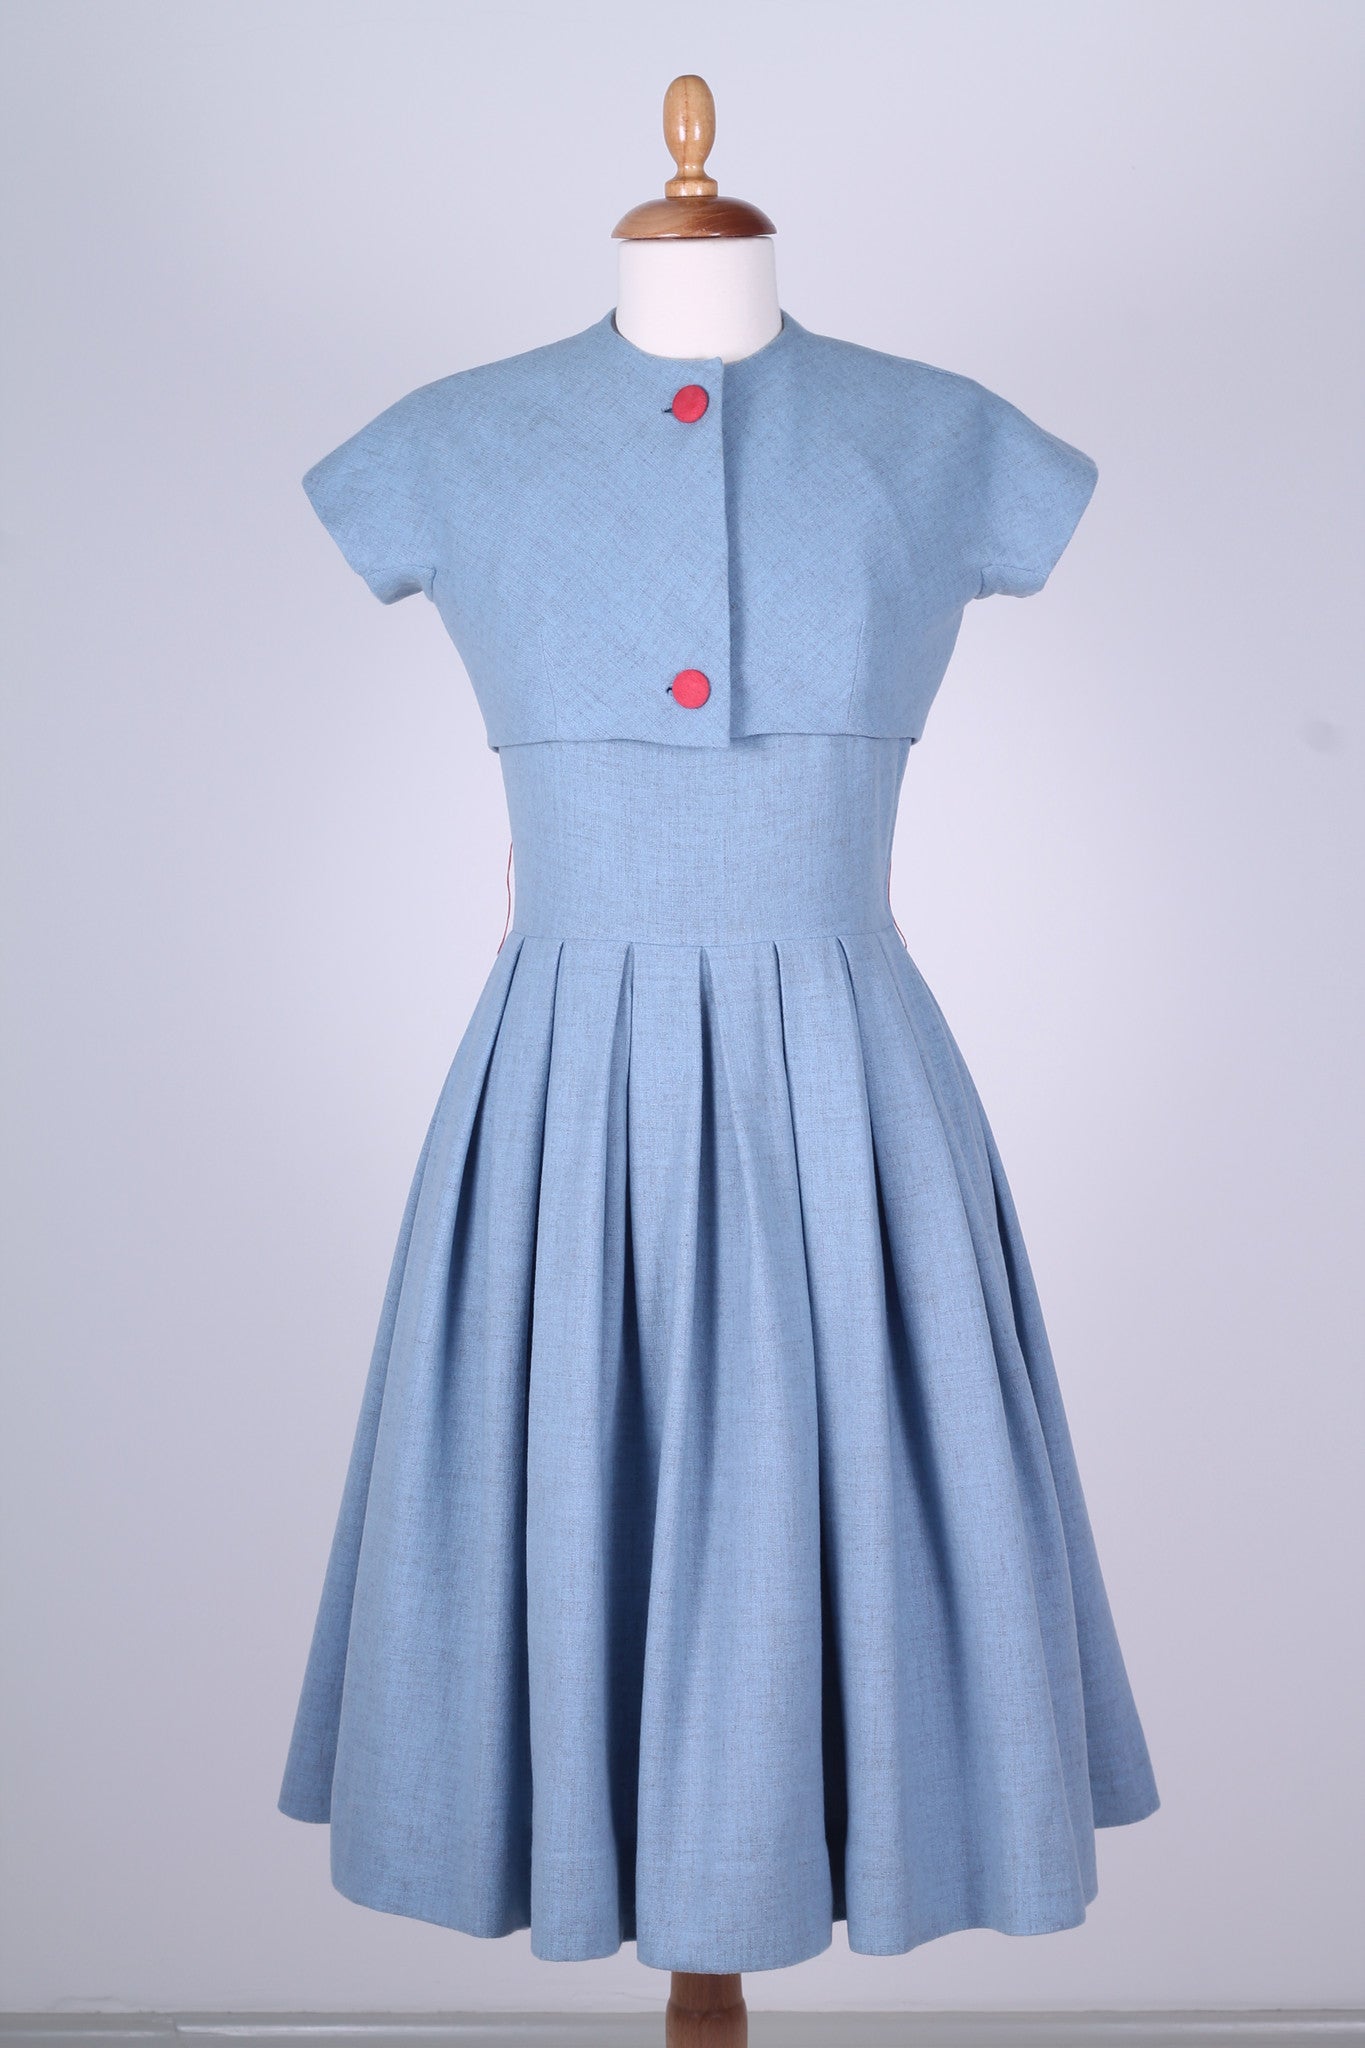 Solgt vintage tøj - Lyseblå hvedagskjole i uld med bolero1950. S - Solgt - Vintage Divine - 1